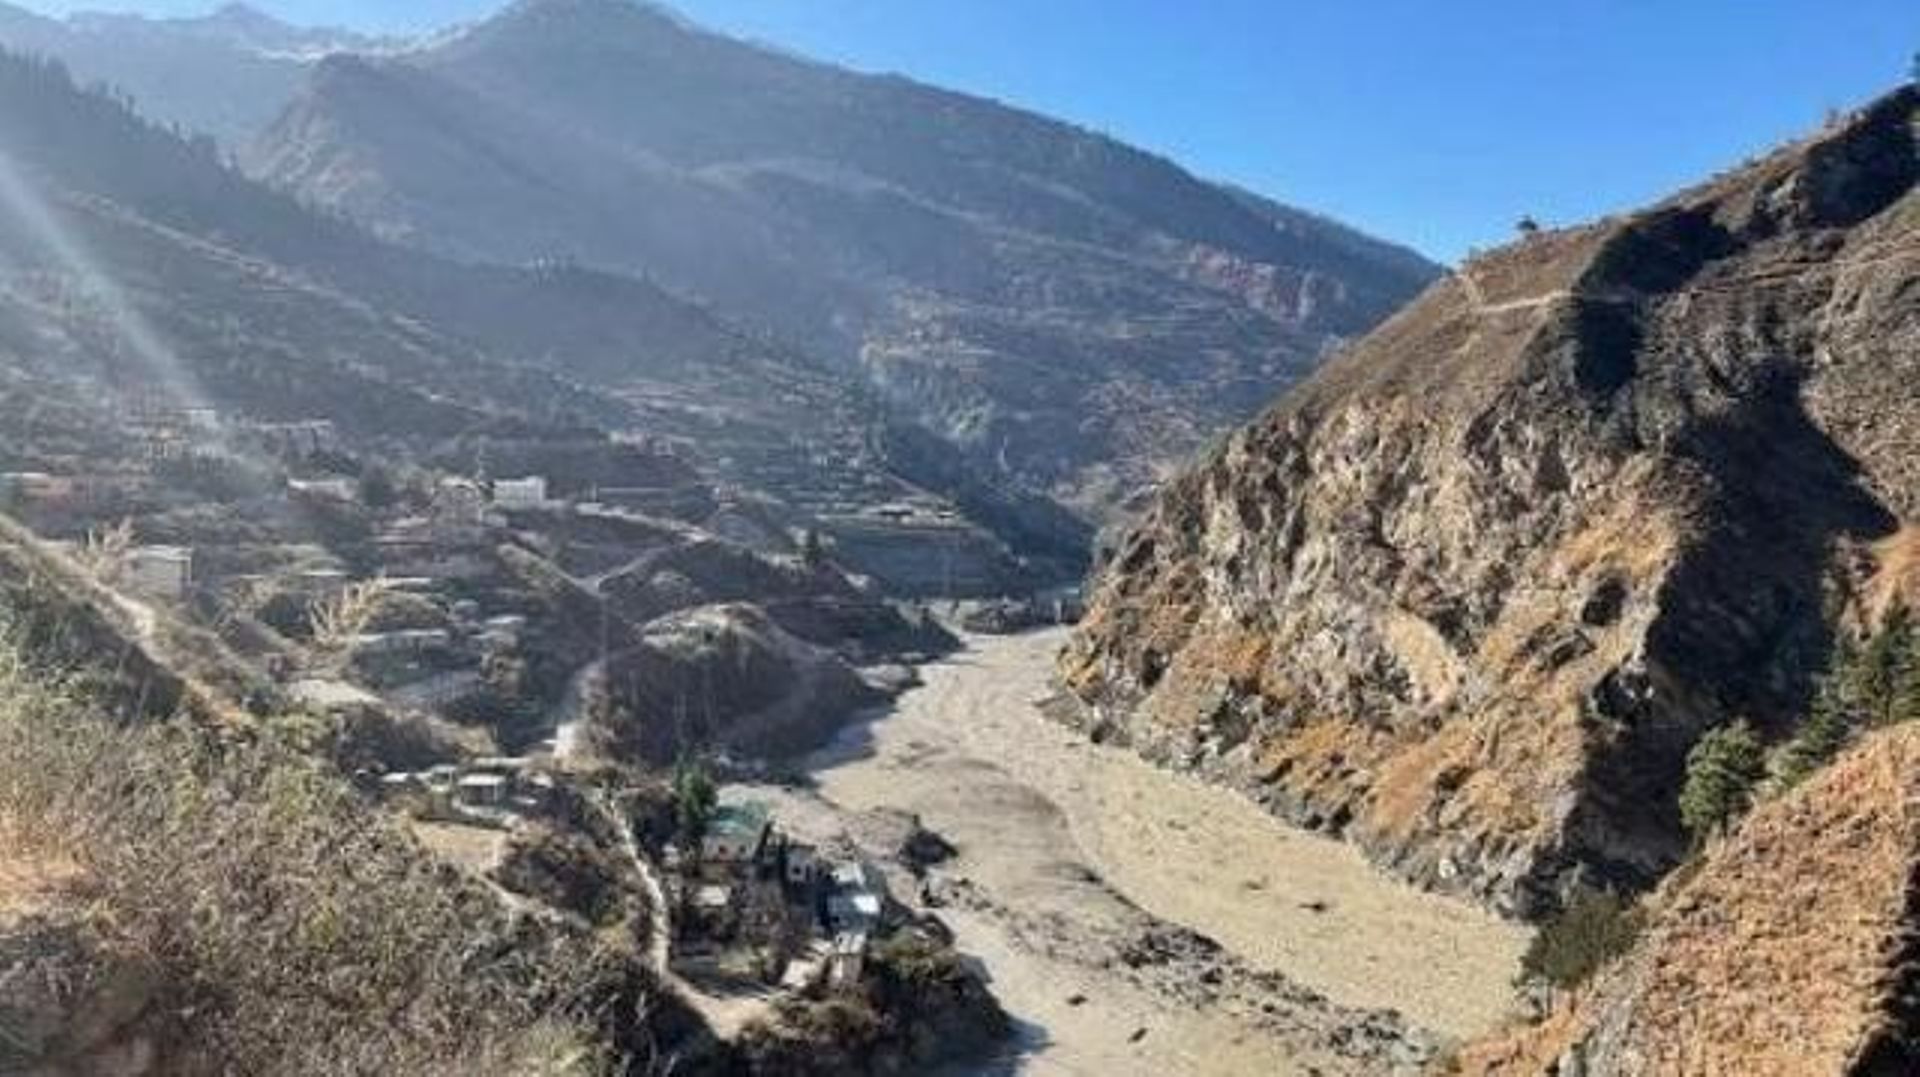 Rupture d'un glacier dans l'Himalaya - Au moins sept morts et une centaine de disparus après la rupture d'un glacier en Inde